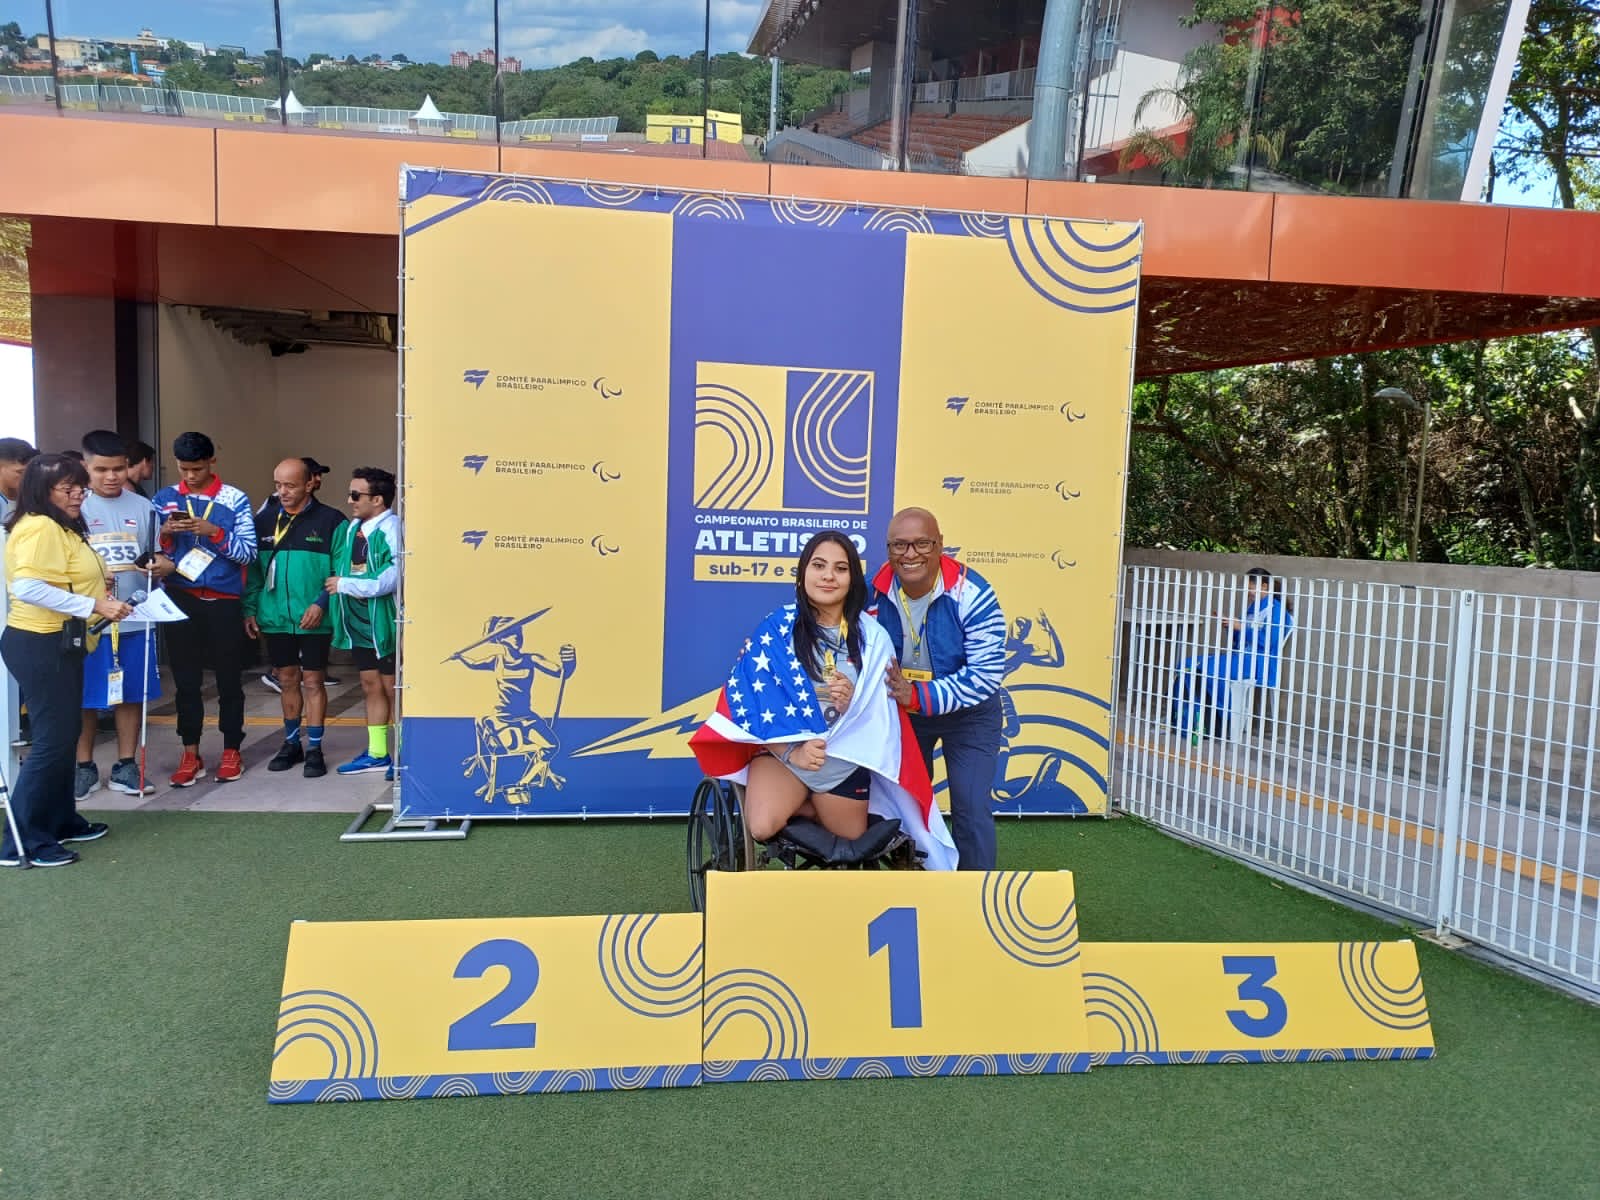 Os alunos paratletas seguem buscando a classificatória nos Jogos Parapan-Americanos de jovens. Foto: Divulgação/Joniferson Vieira